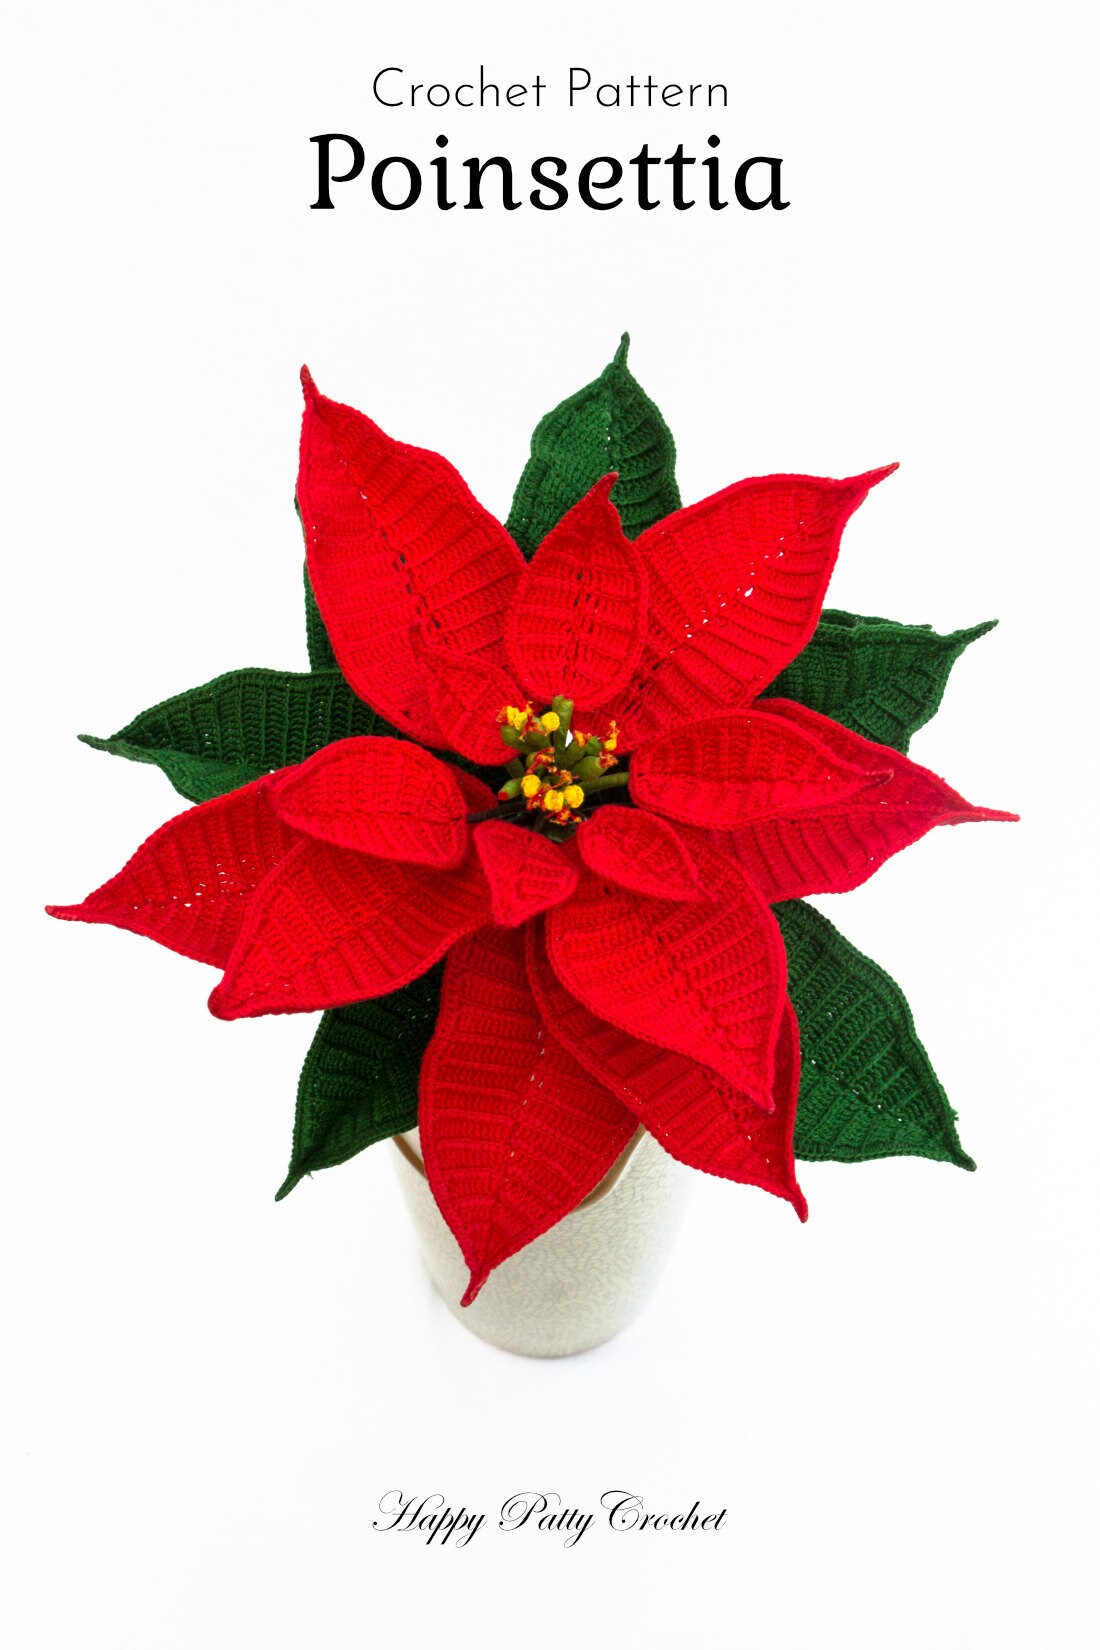 Crochet Poinsettia Pattern - Crochet Flower Pattern - Christmas Crochet Pattern - Christmas Gift Pattern - Christmas Home Decor